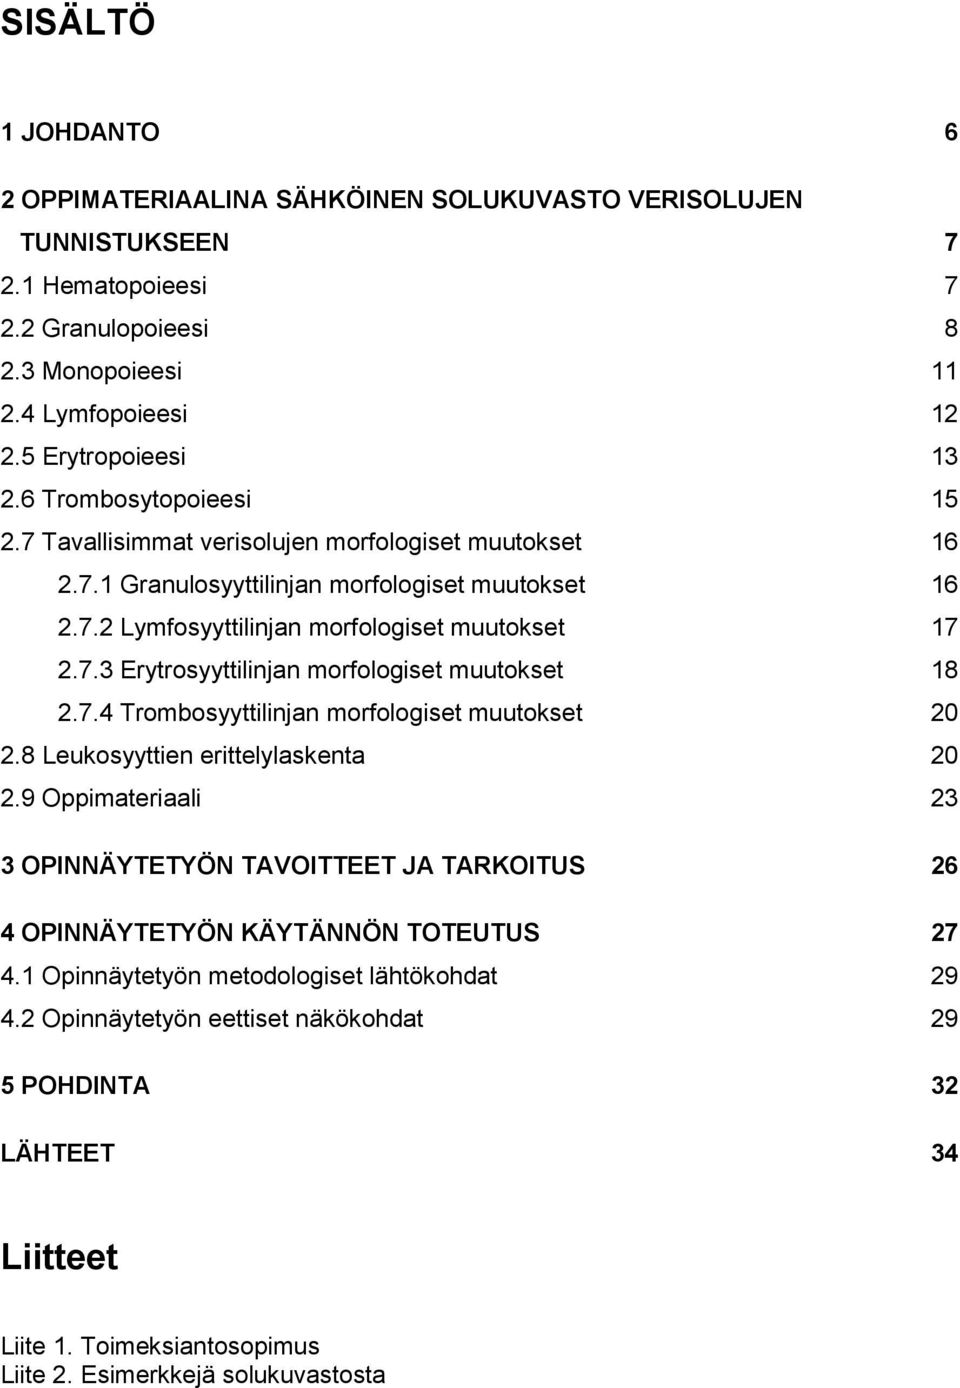 7.4 Trombosyyttilinjan morfologiset muutokset 20 2.8 Leukosyyttien erittelylaskenta 20 2.9 Oppimateriaali 23 3 OPINNÄYTETYÖN TAVOITTEET JA TARKOITUS 26 4 OPINNÄYTETYÖN KÄYTÄNNÖN TOTEUTUS 27 4.